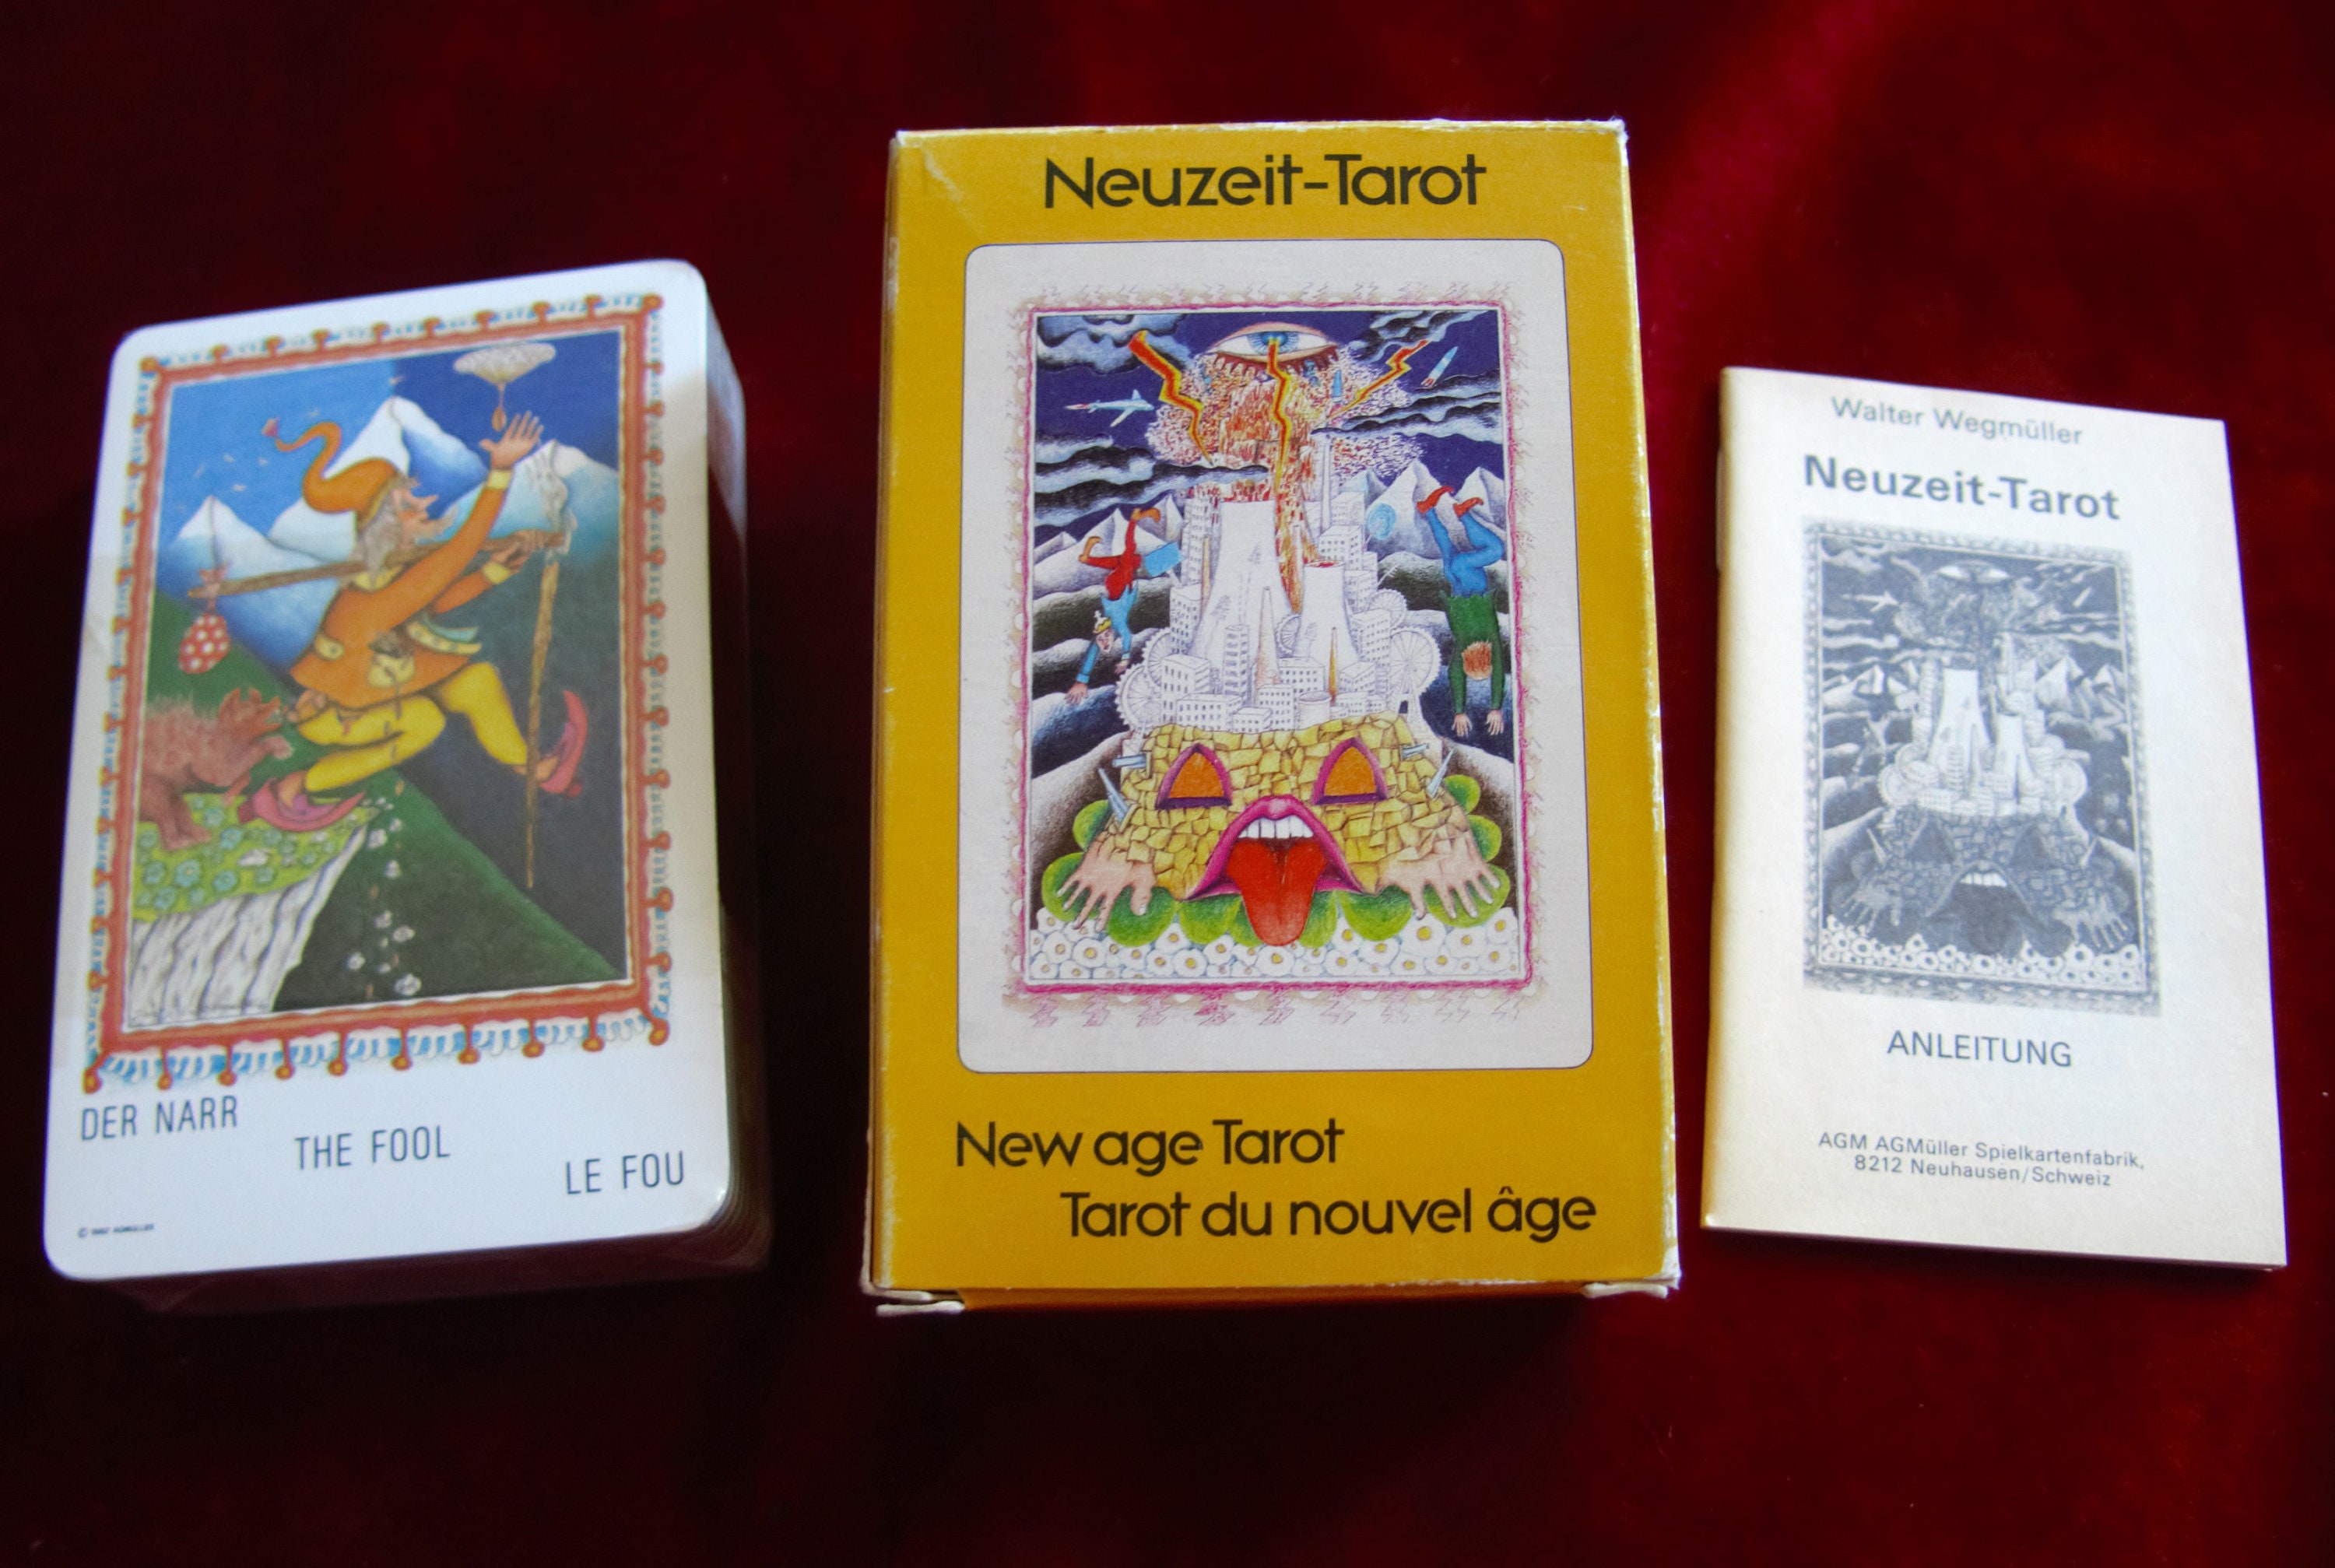 Neuzeit-Tarot タロットカード